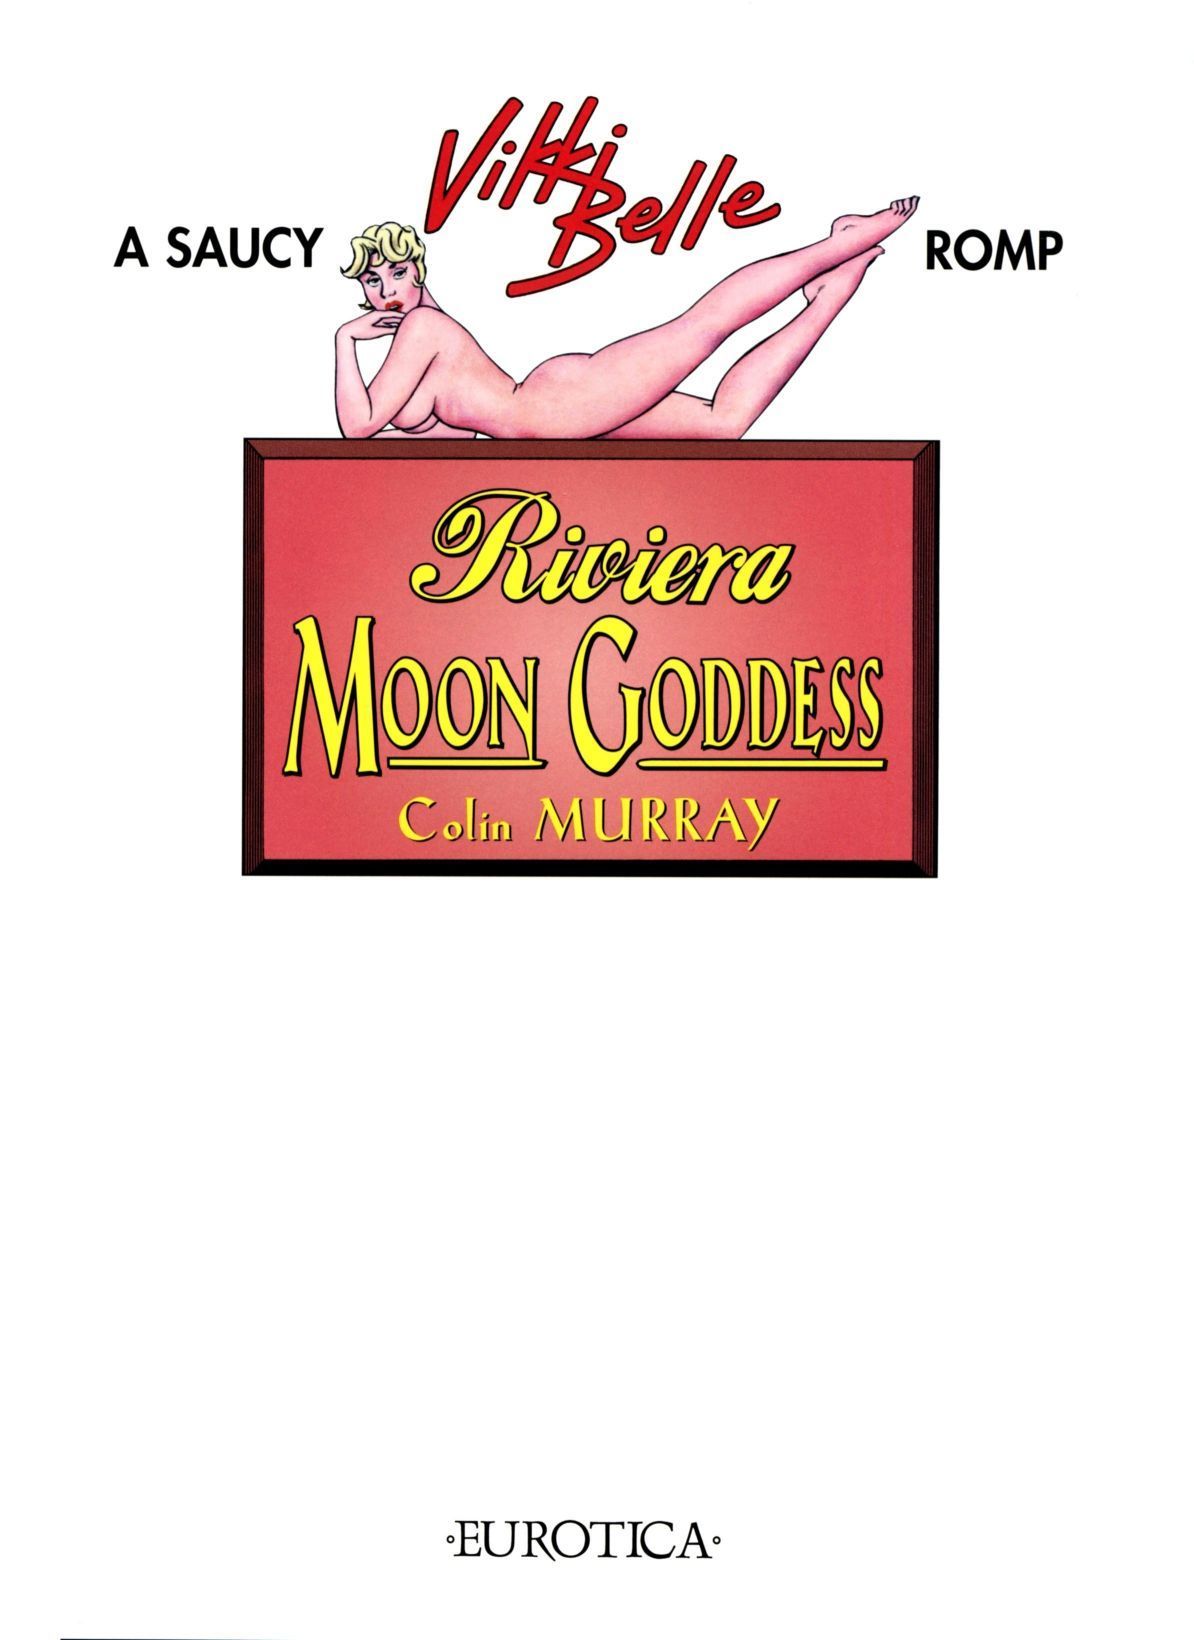 Colin Murray A Saucy Vikki Belle Romp 2: Riviera Moon Goddess